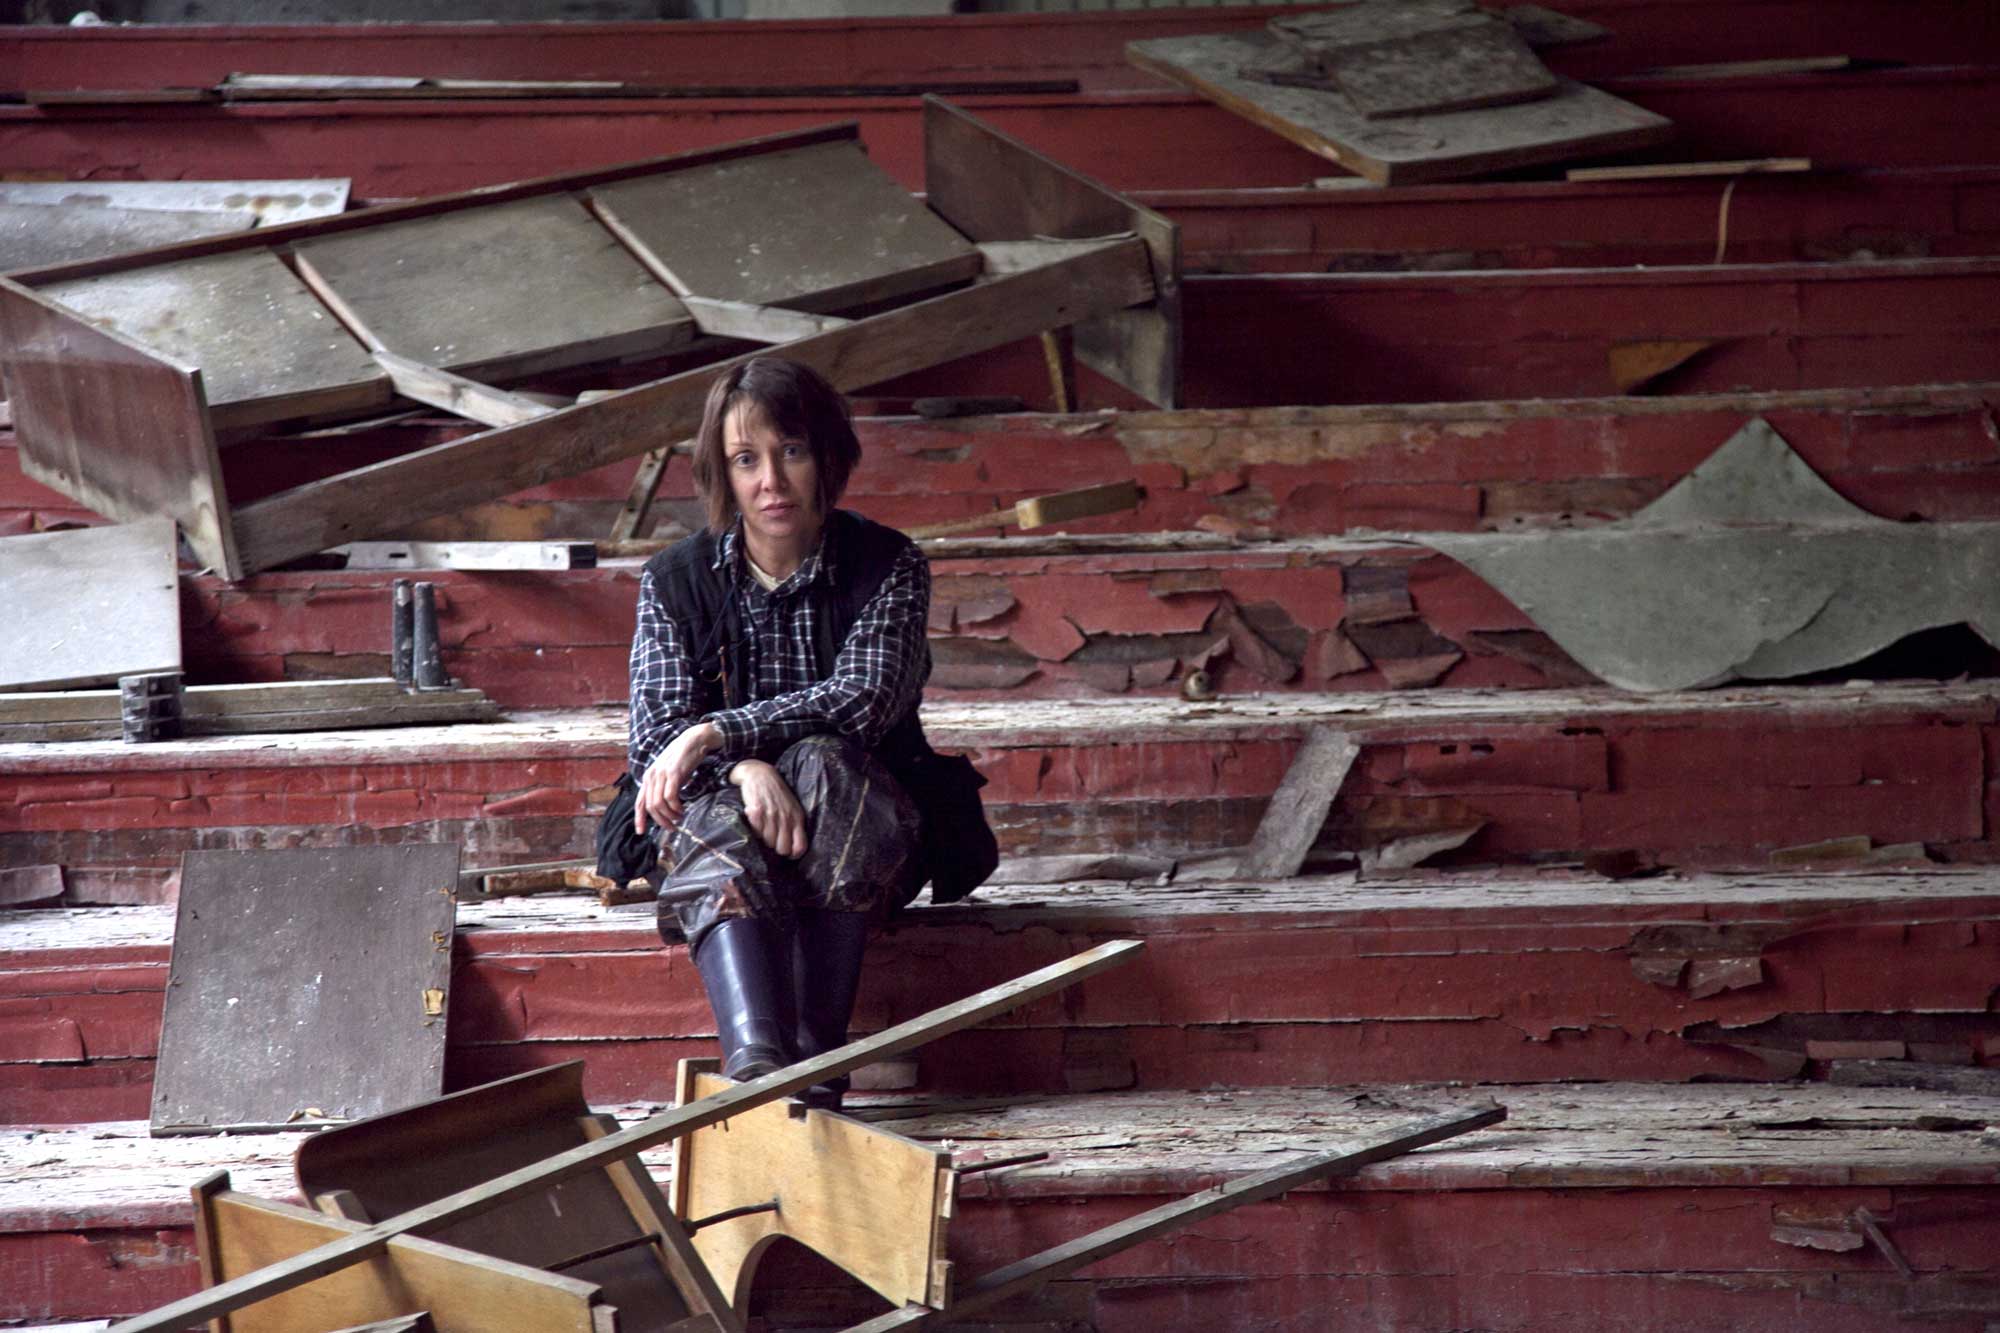 Diana Thater in Chernobyl. Photo by Volodymyr Palylyk, 2010